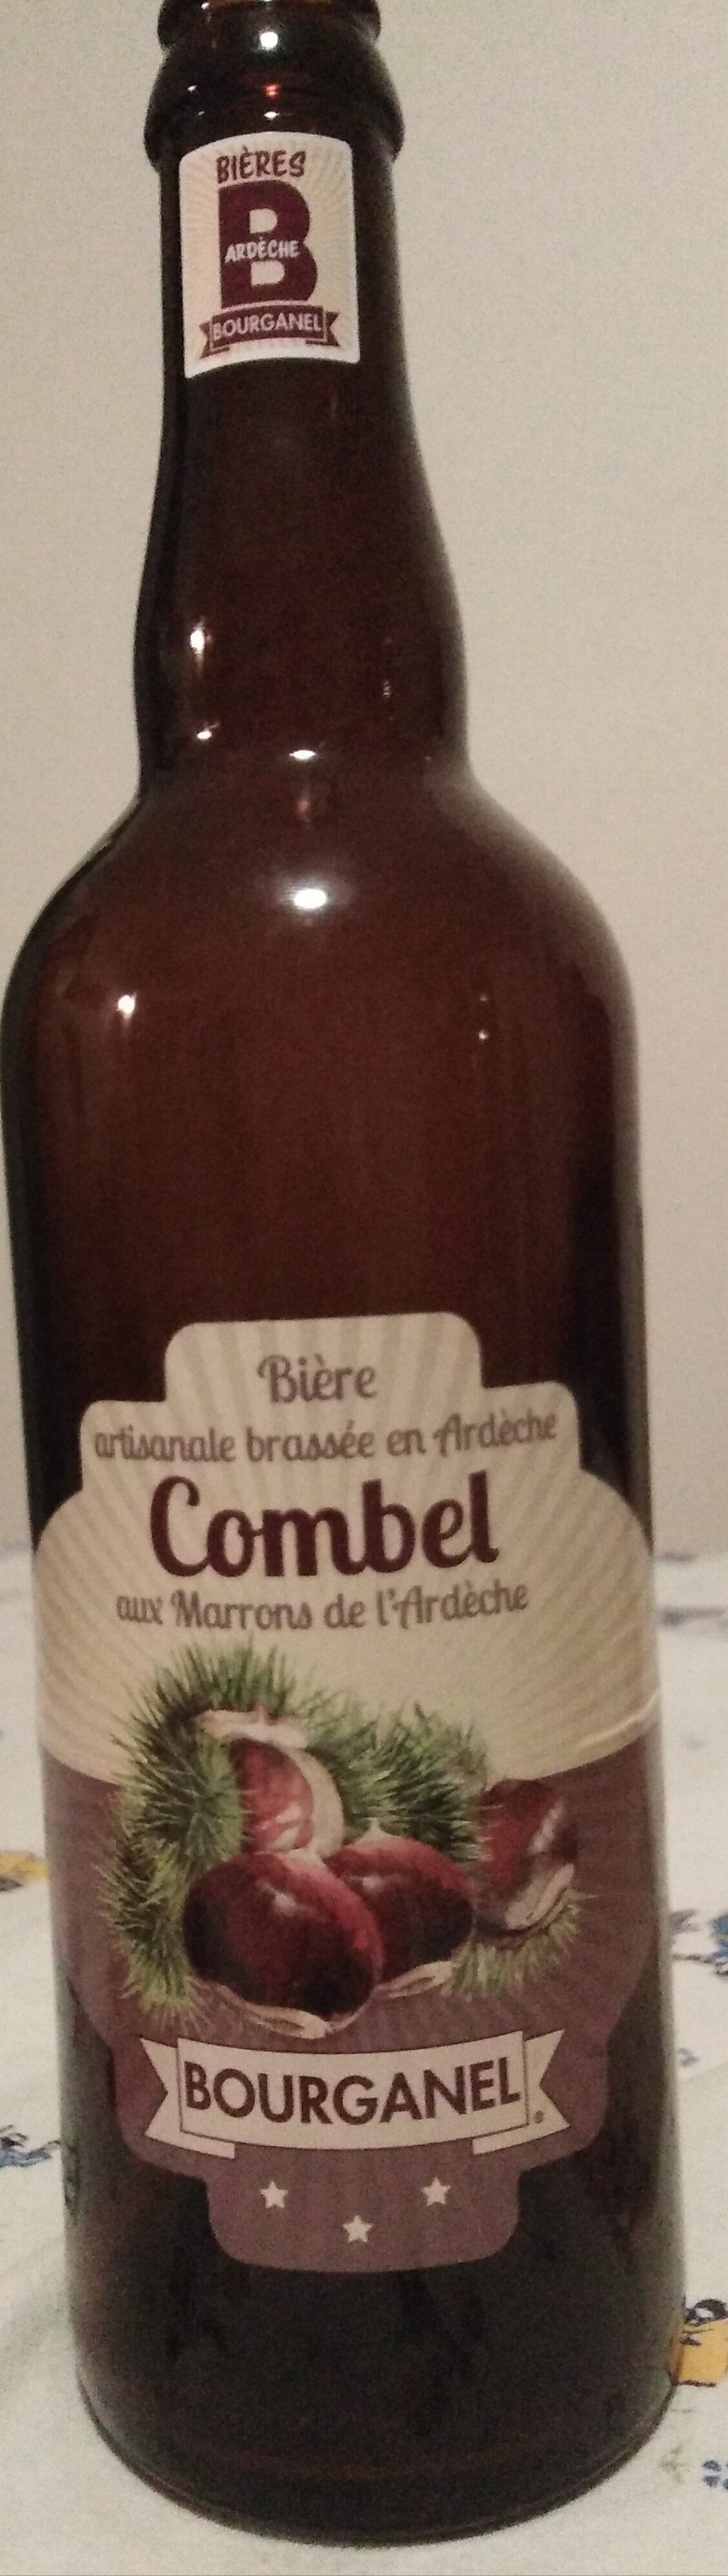 Combel aux Marrons d'Ardèche - Producto - fr